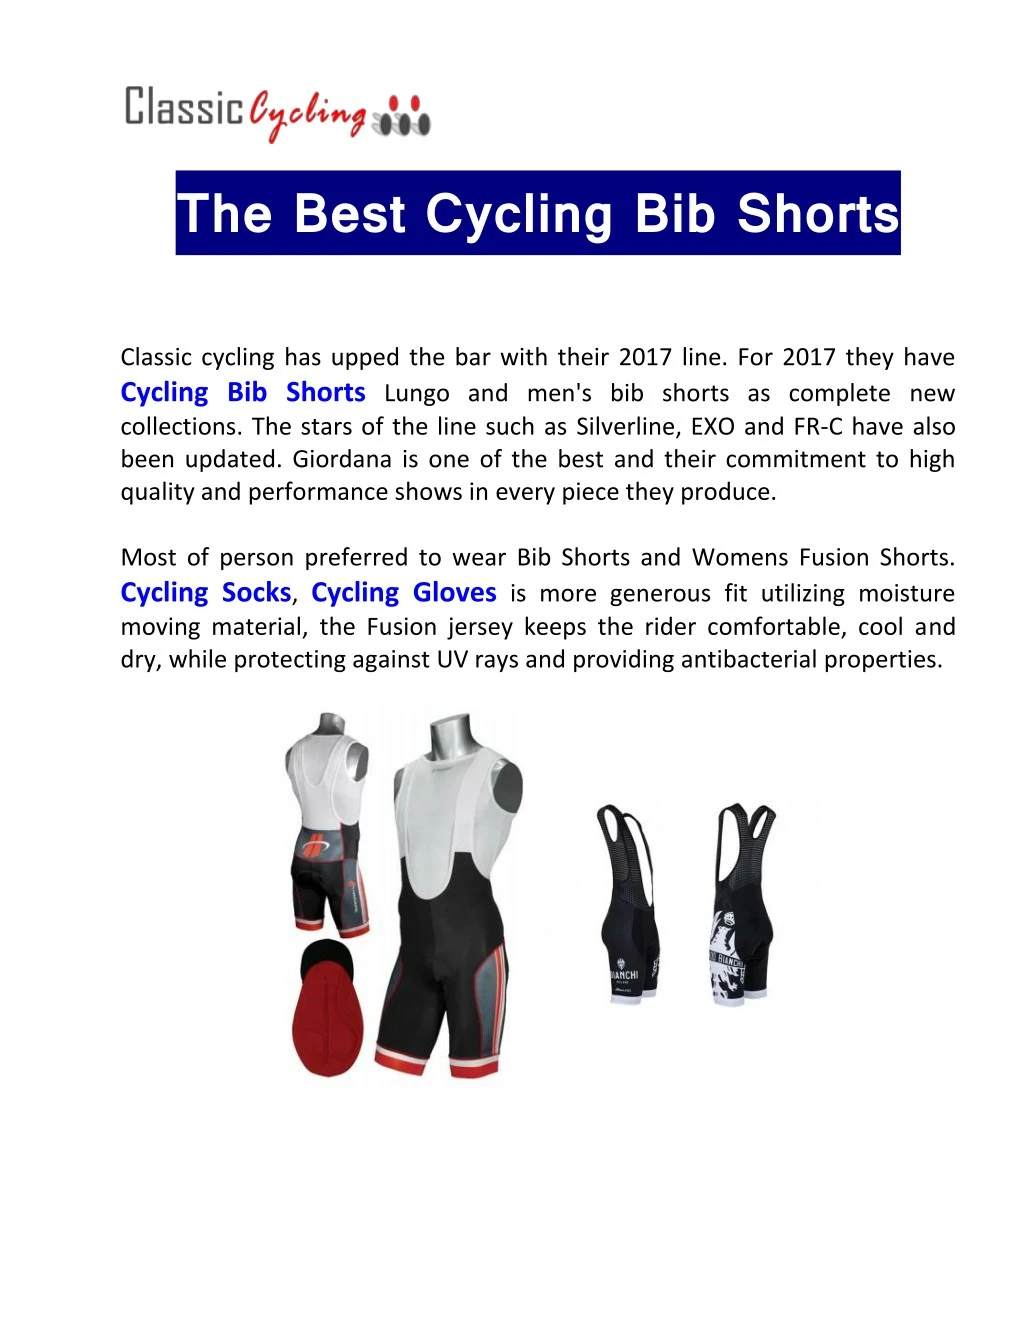 the best cycling bib shorts classic cycling